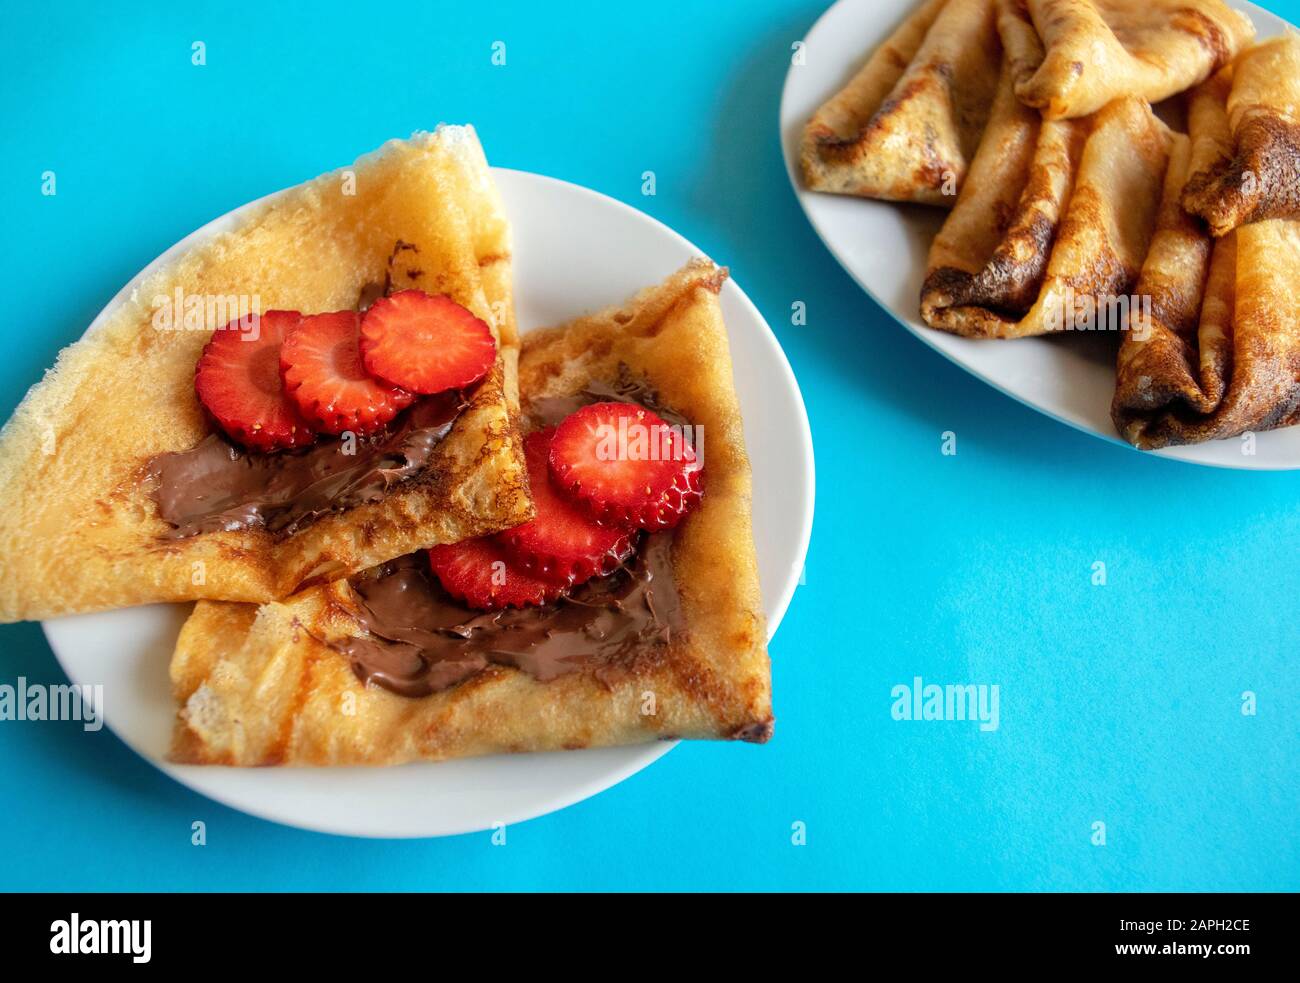 Frische Pfannkuchen mit Schokoladenpaste und Erdbeere auf blauem hellem Hintergrund. Pfannkuchen im russischen Stil für Die Pancake-Woche. Pfannkuchen in englischer Fassung. Stockfoto